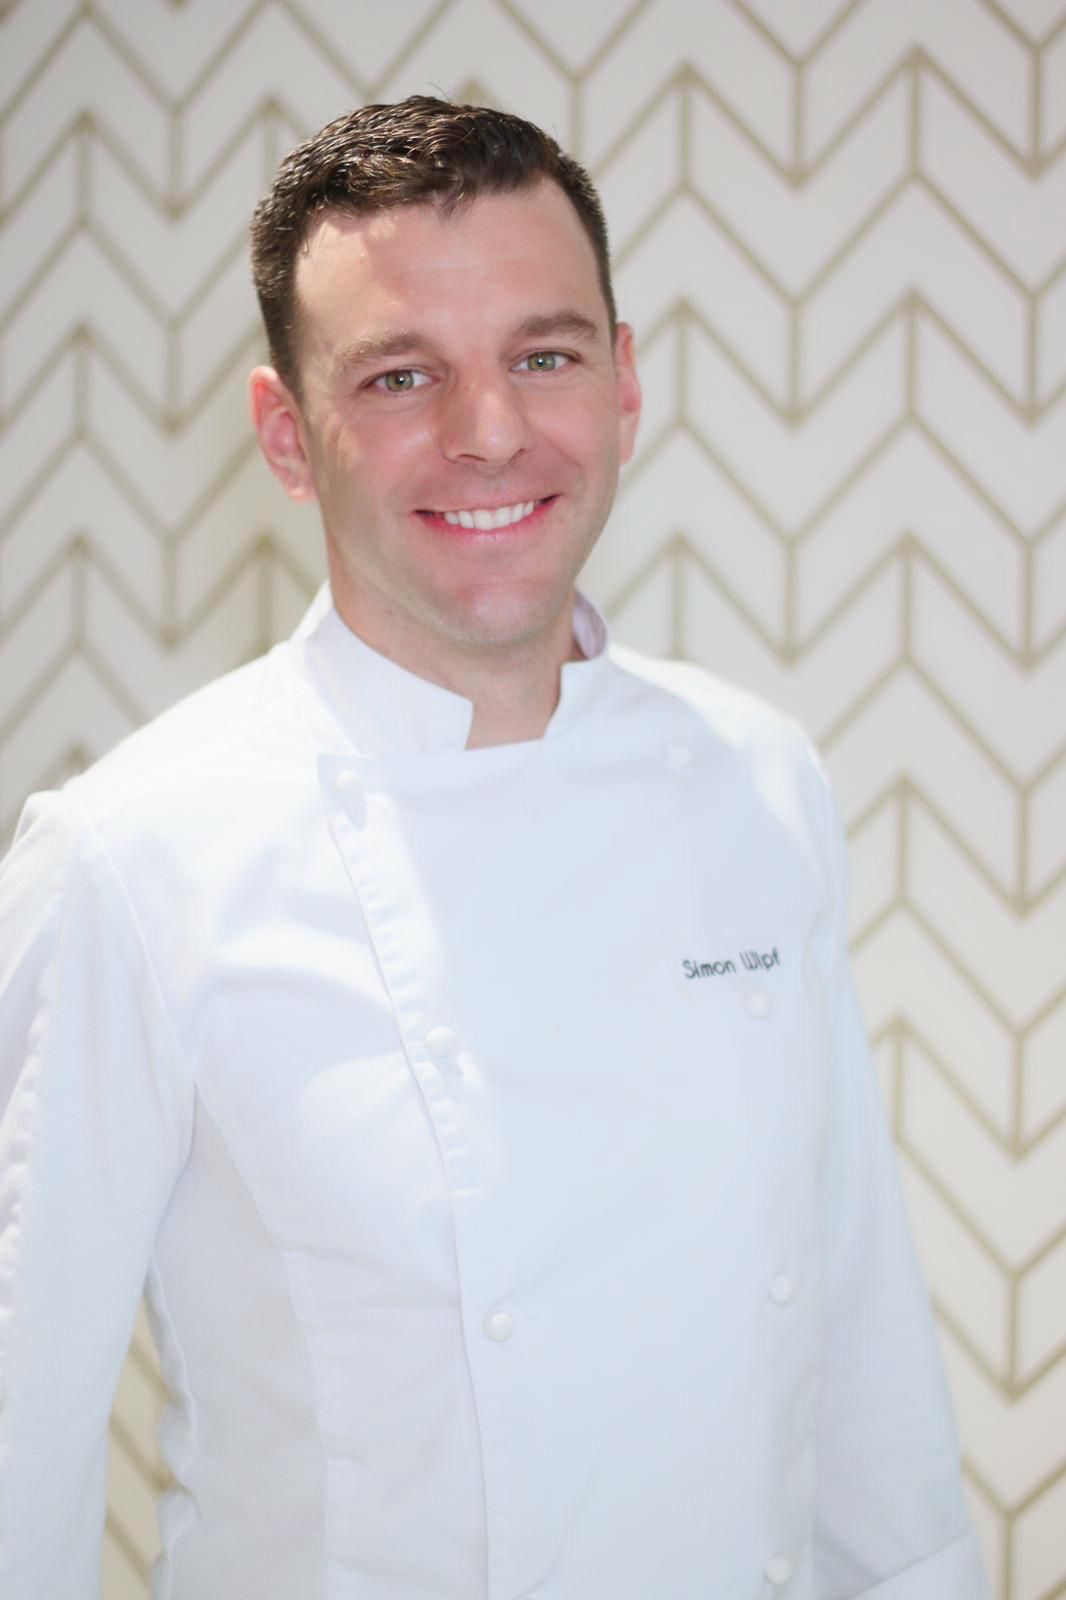 El suizo Simon Wipf con su uniforme de cocina.